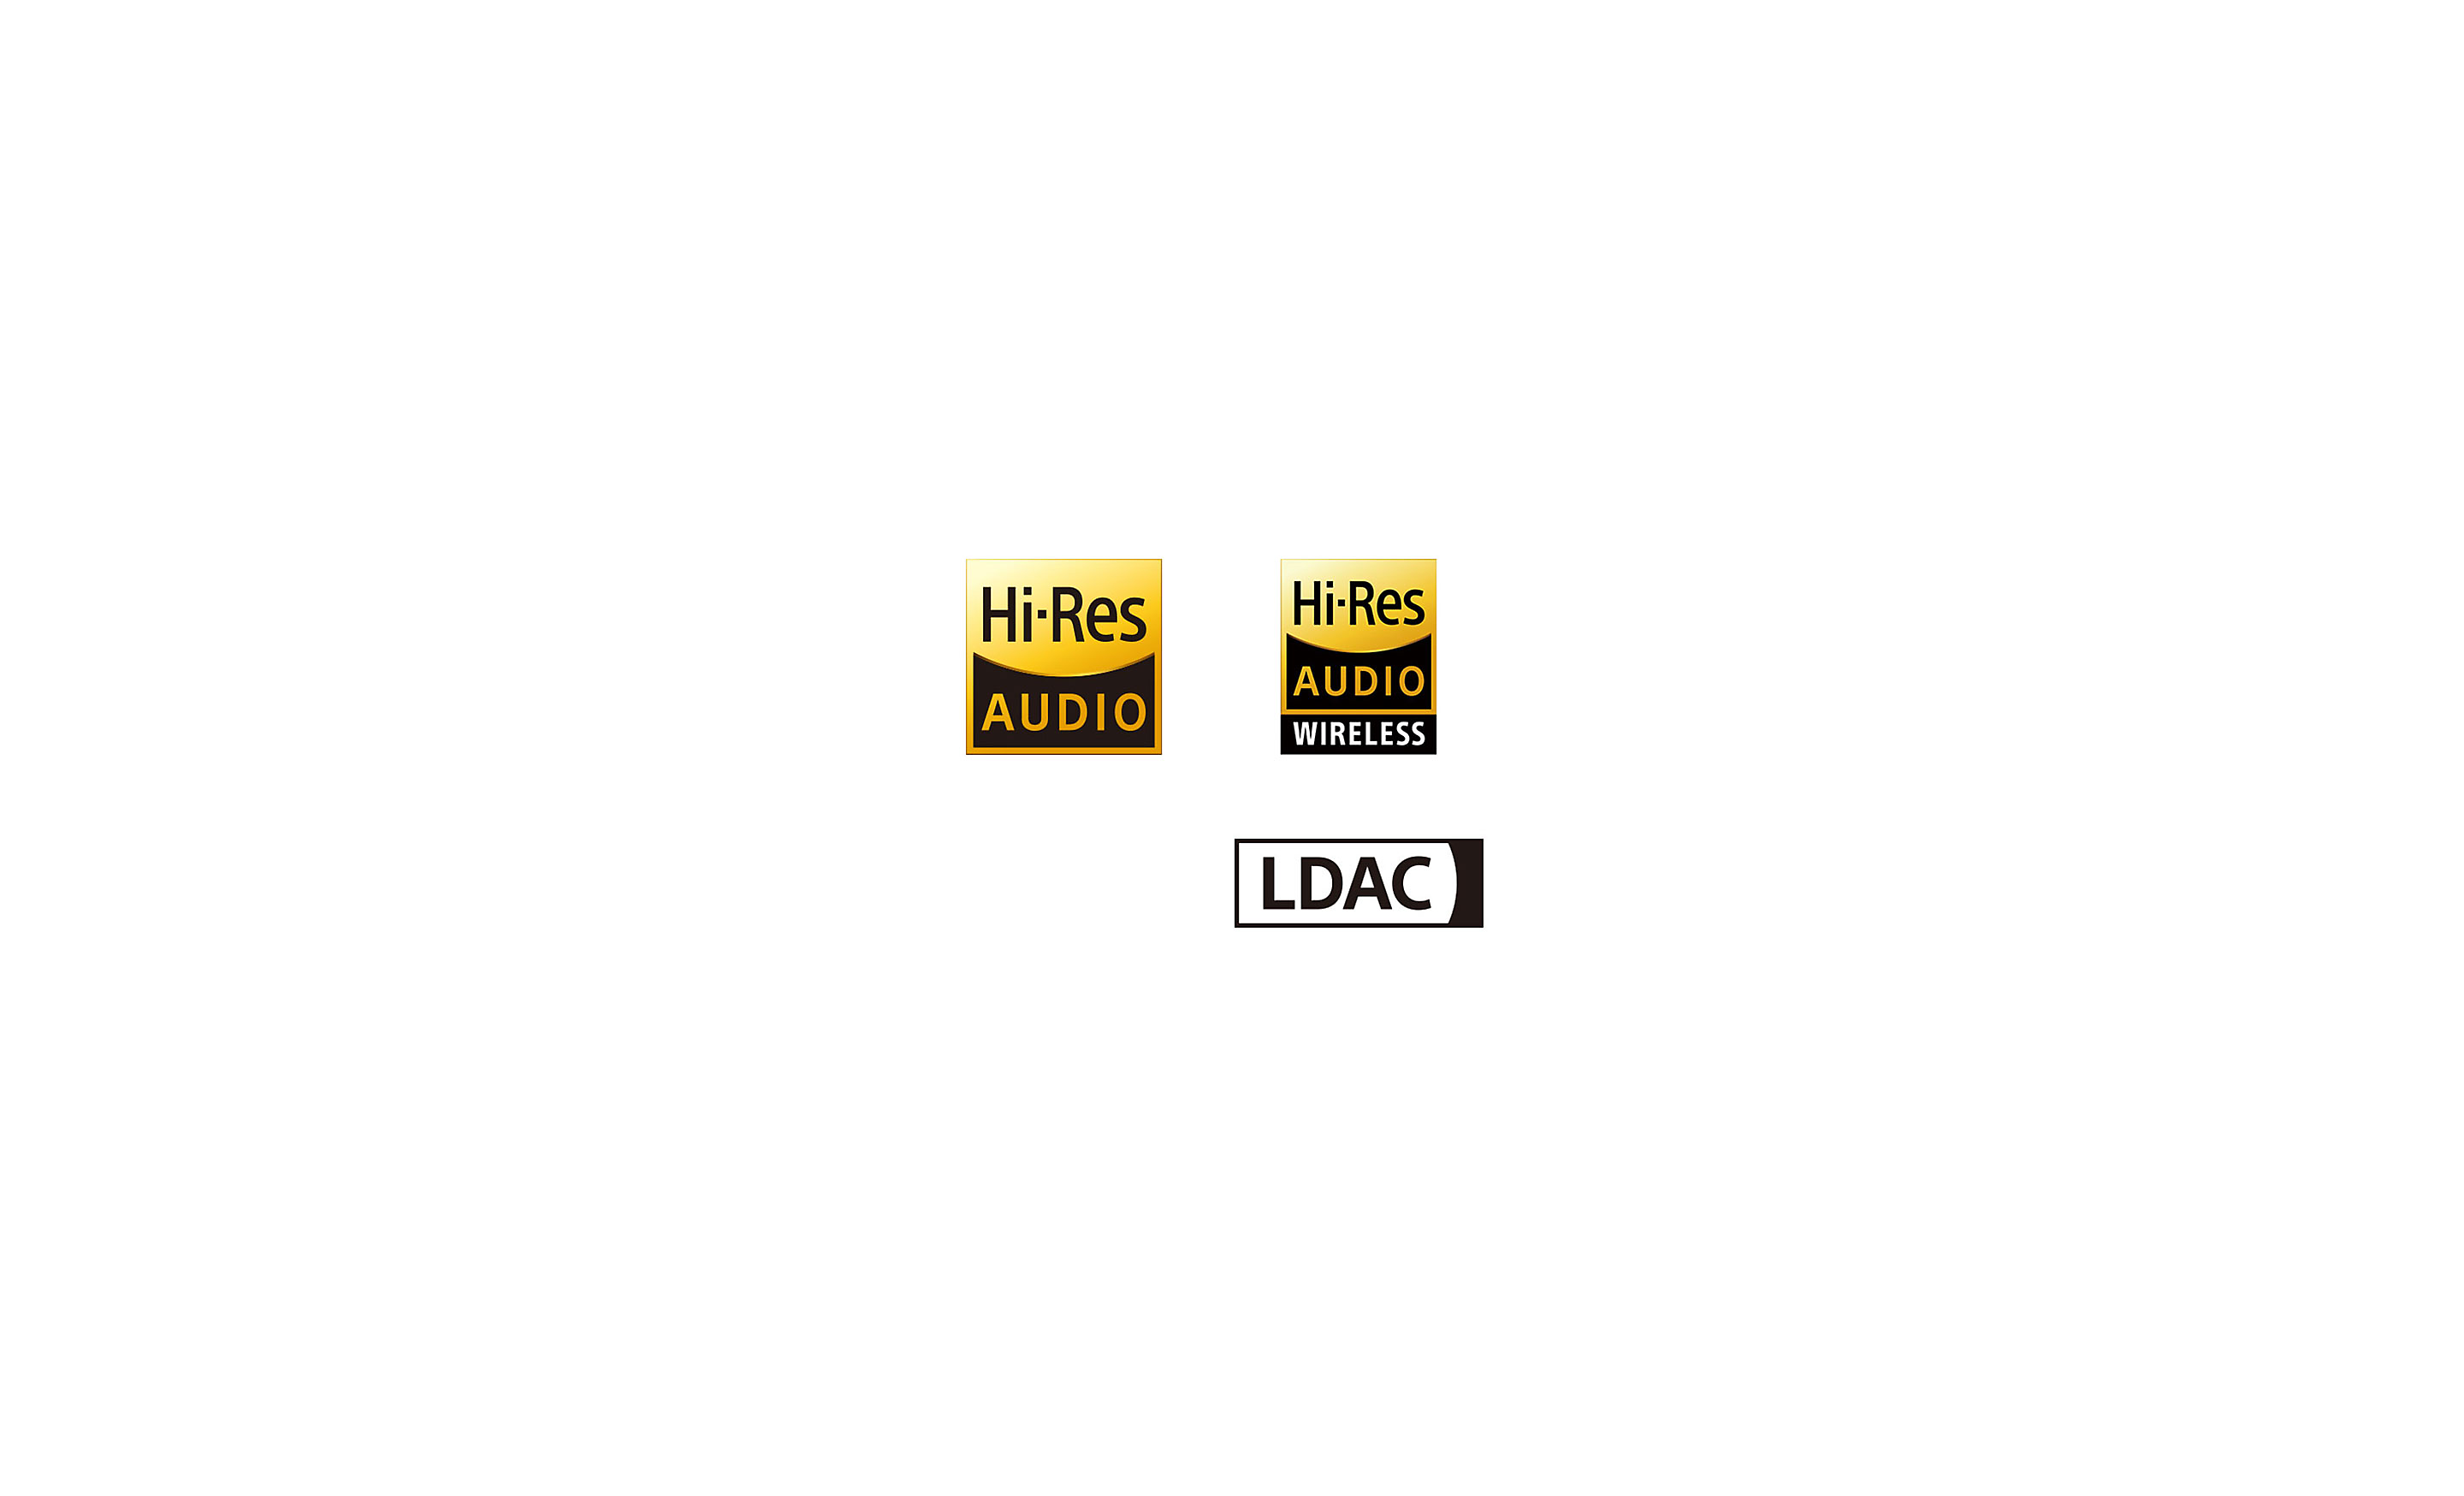 高解析度音效、無線高解析度音效及 LDAC 標誌。